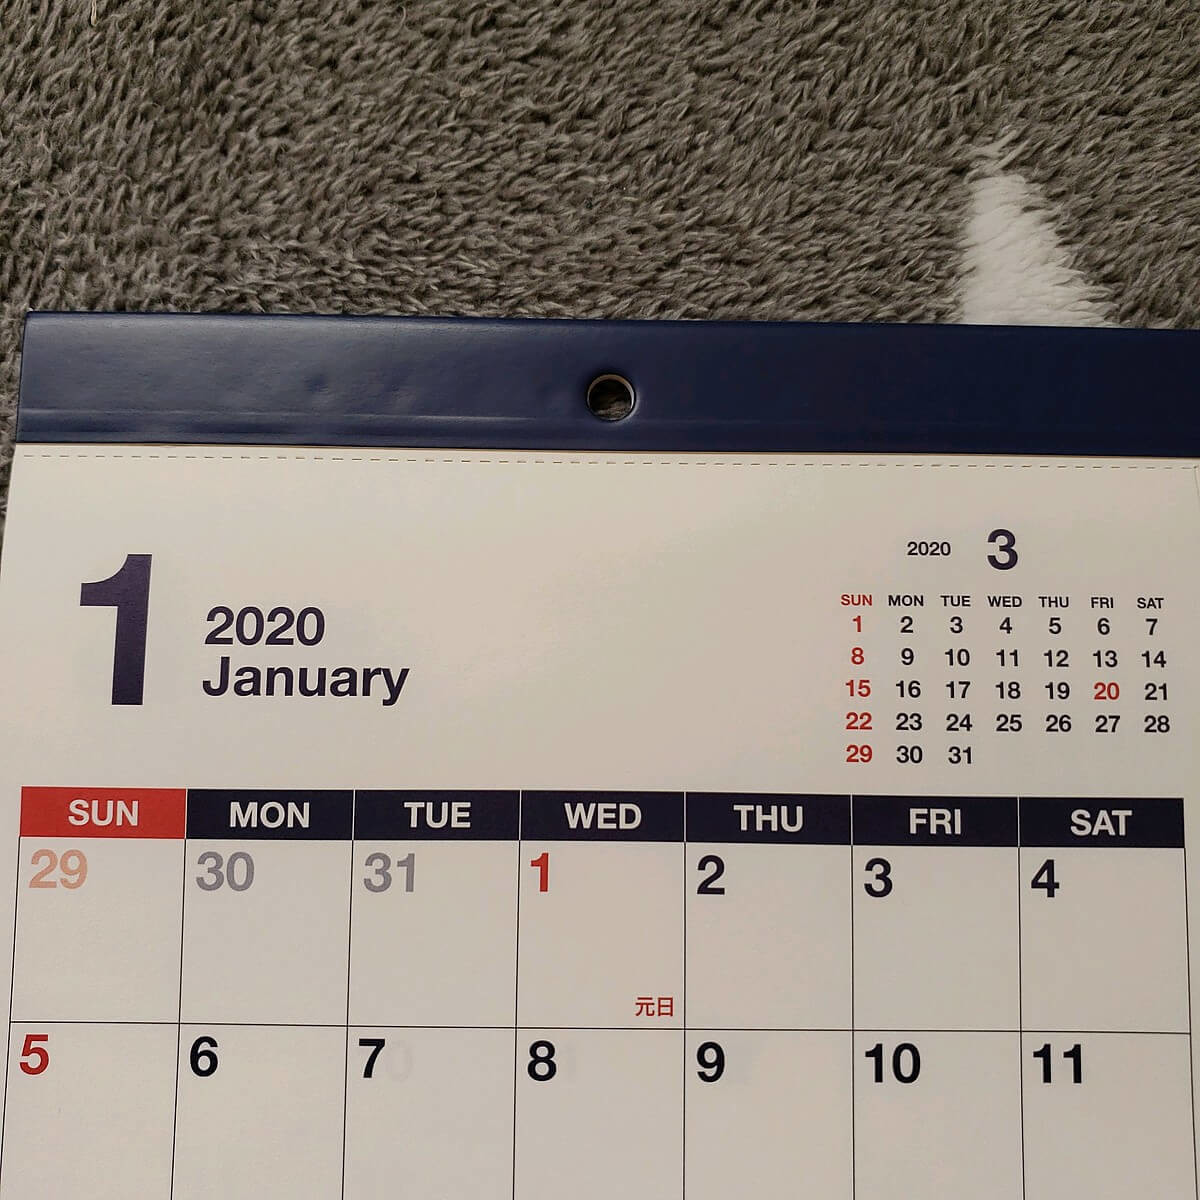 ダイソー年おすすめカレンダー 2年連続買っちゃった 2カ月カレンダー の良さ ヨムーノ